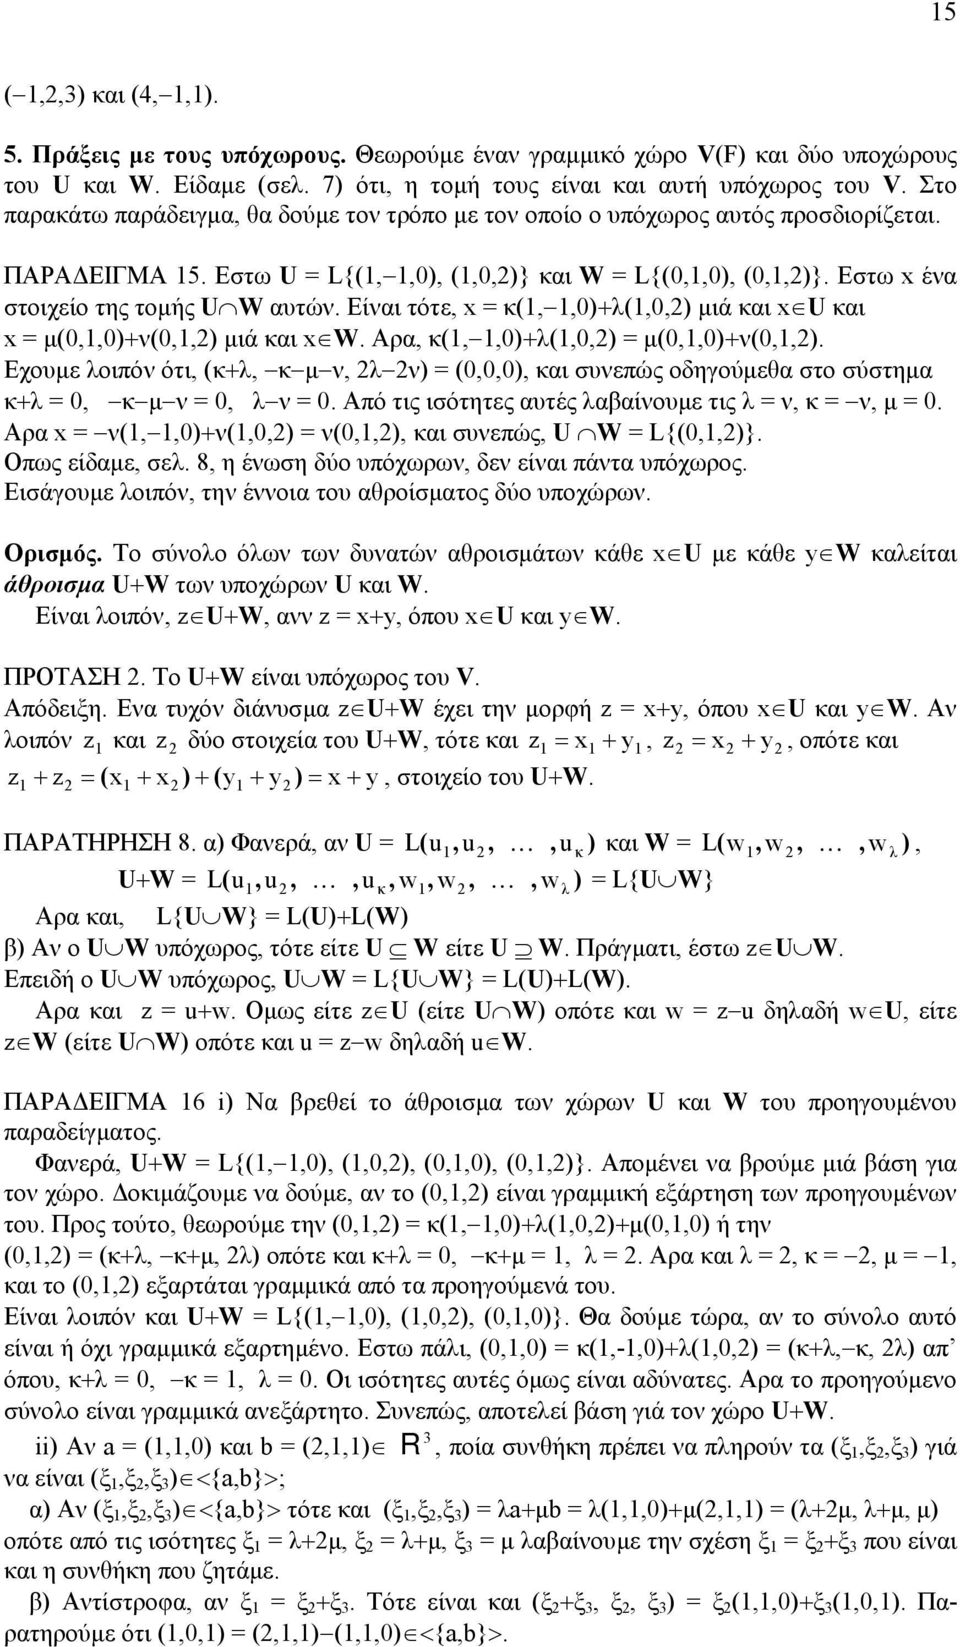 Είναι τότε, x = κ(,,0)+λ(,) µιά και x U και x = µ(,0)+ν(,) µιά και x W. Αρα, κ(,,0)+λ(,) = µ(,0)+ν(,).